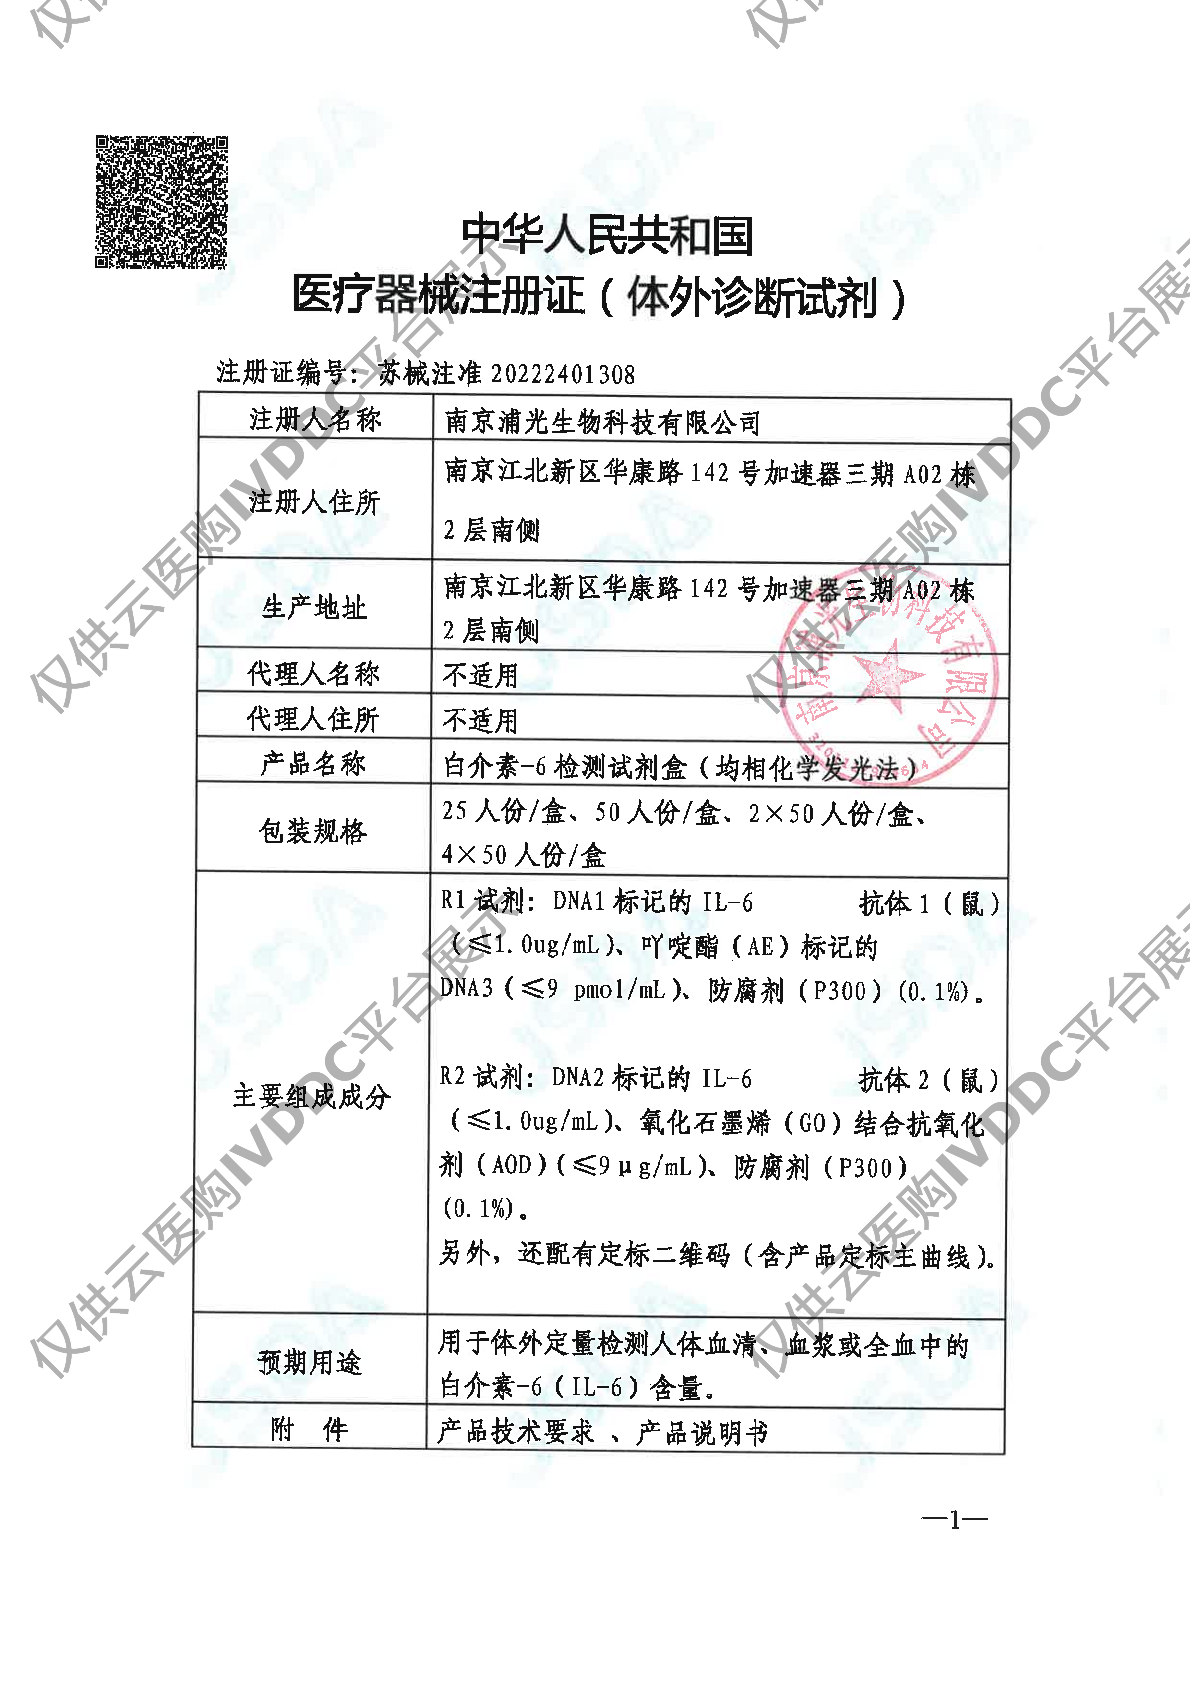 【浦光】白介素-6检测试剂盒注册证